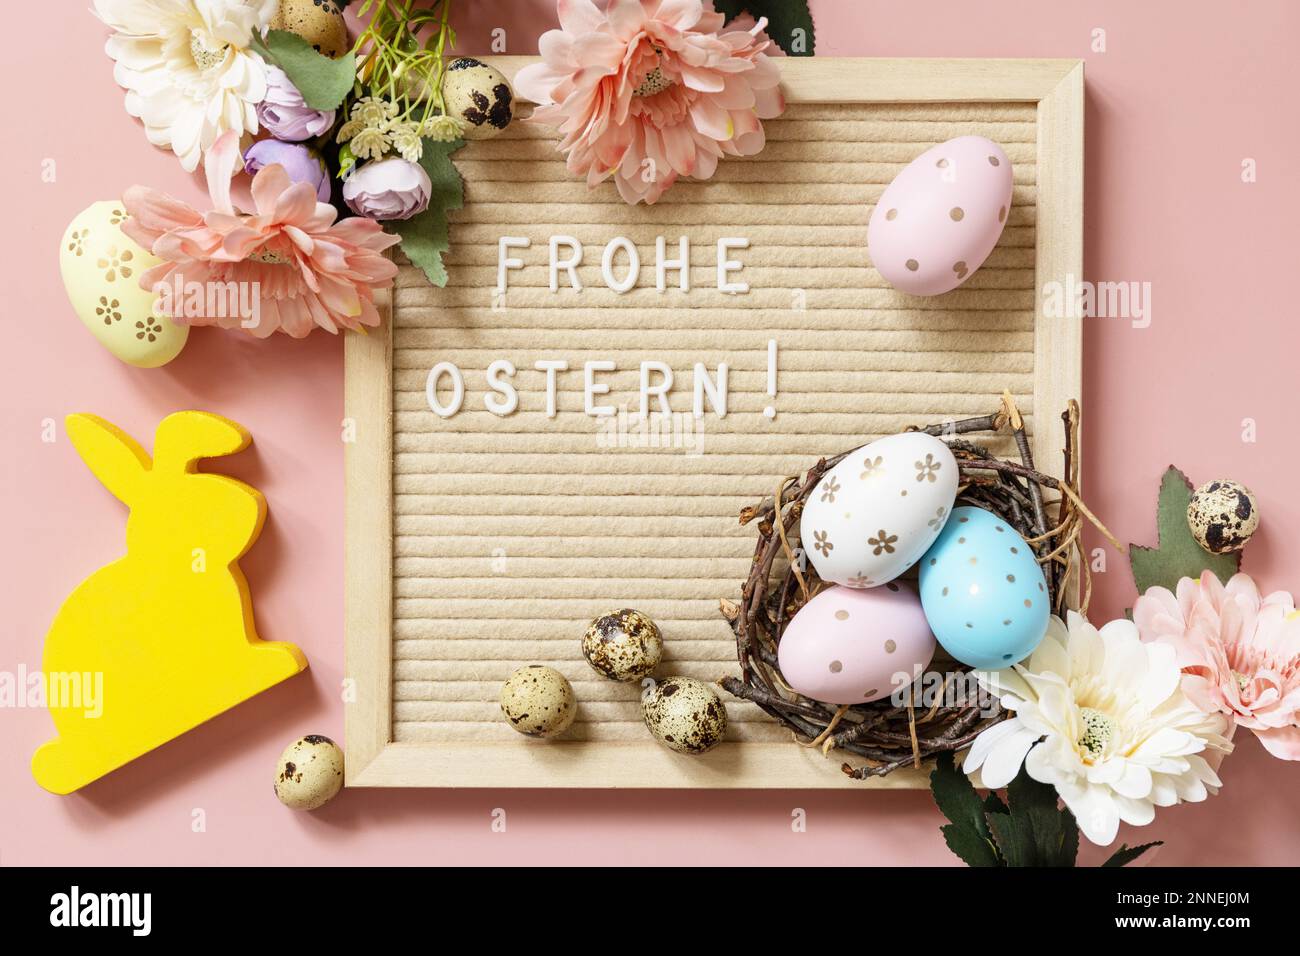 Tableau de lettres, Frohe Ostern - joyeuses Pâques en salutation allemande, oeufs de Pâques et fleurs de printemps sur fond rose pastel. Vue de dessus. Banque D'Images